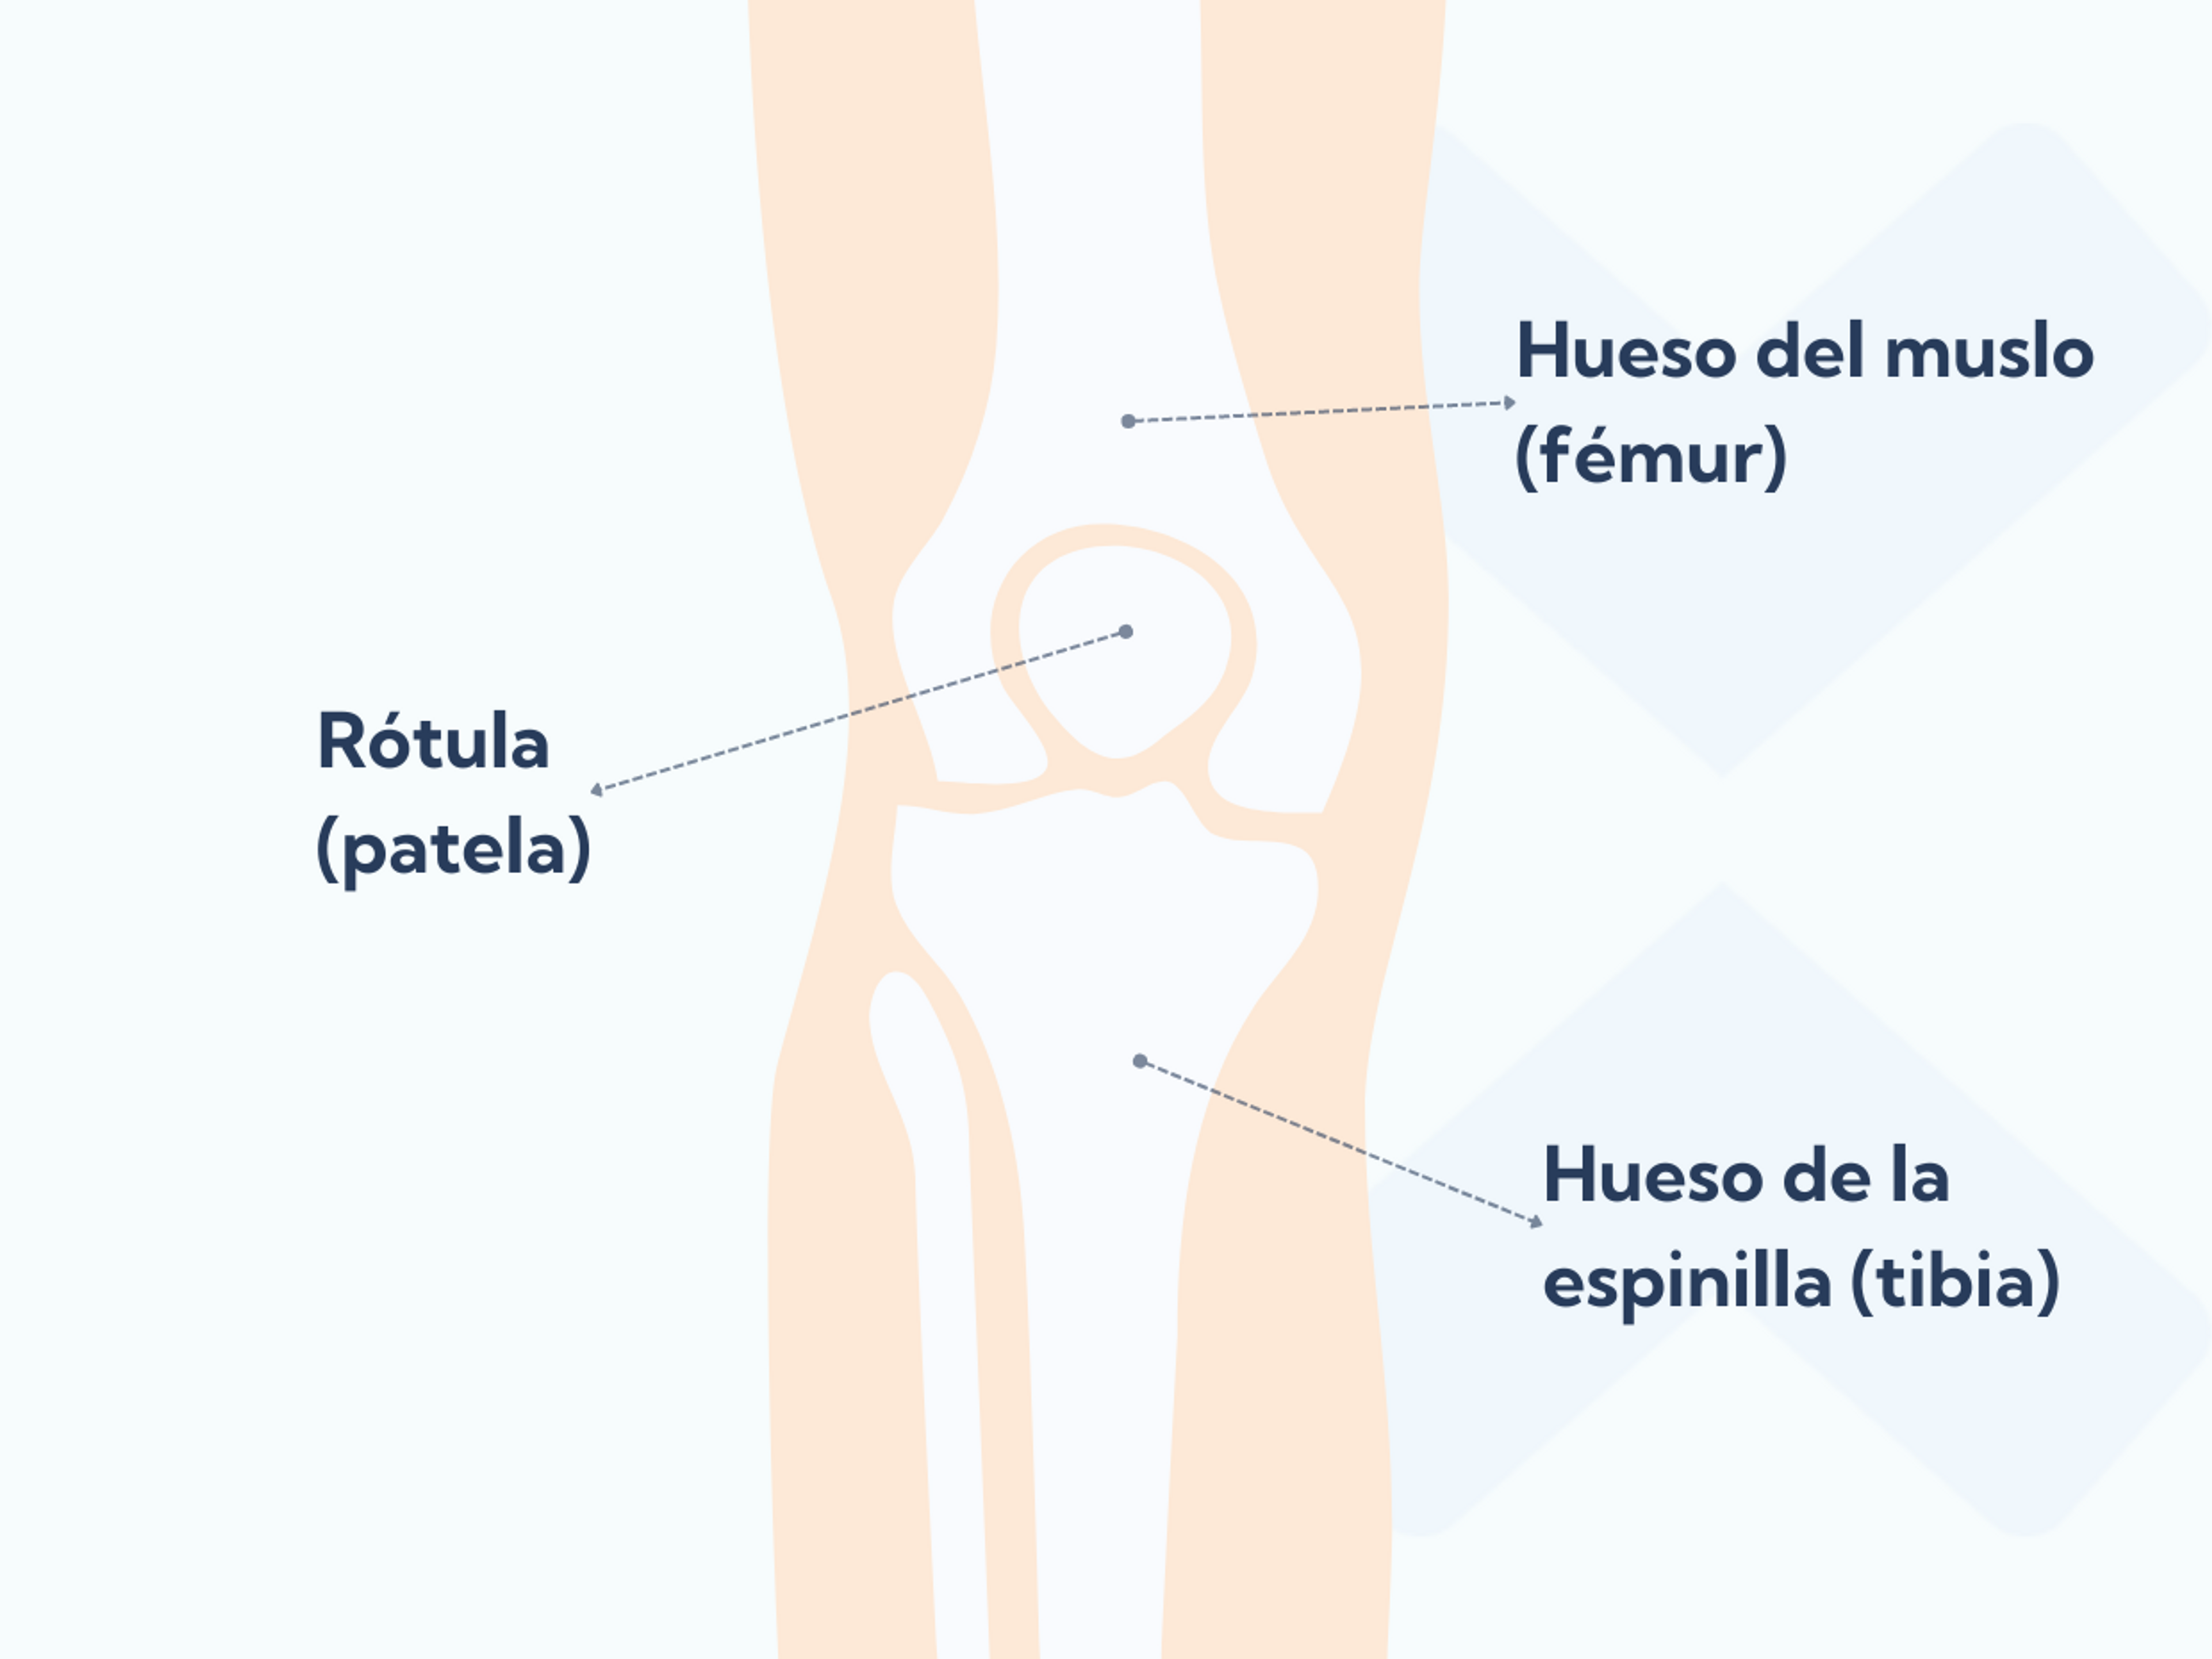 La anatomía de la articulación patelofemoral con la rótula, el hueso de la espinilla y el hueso del muslo.